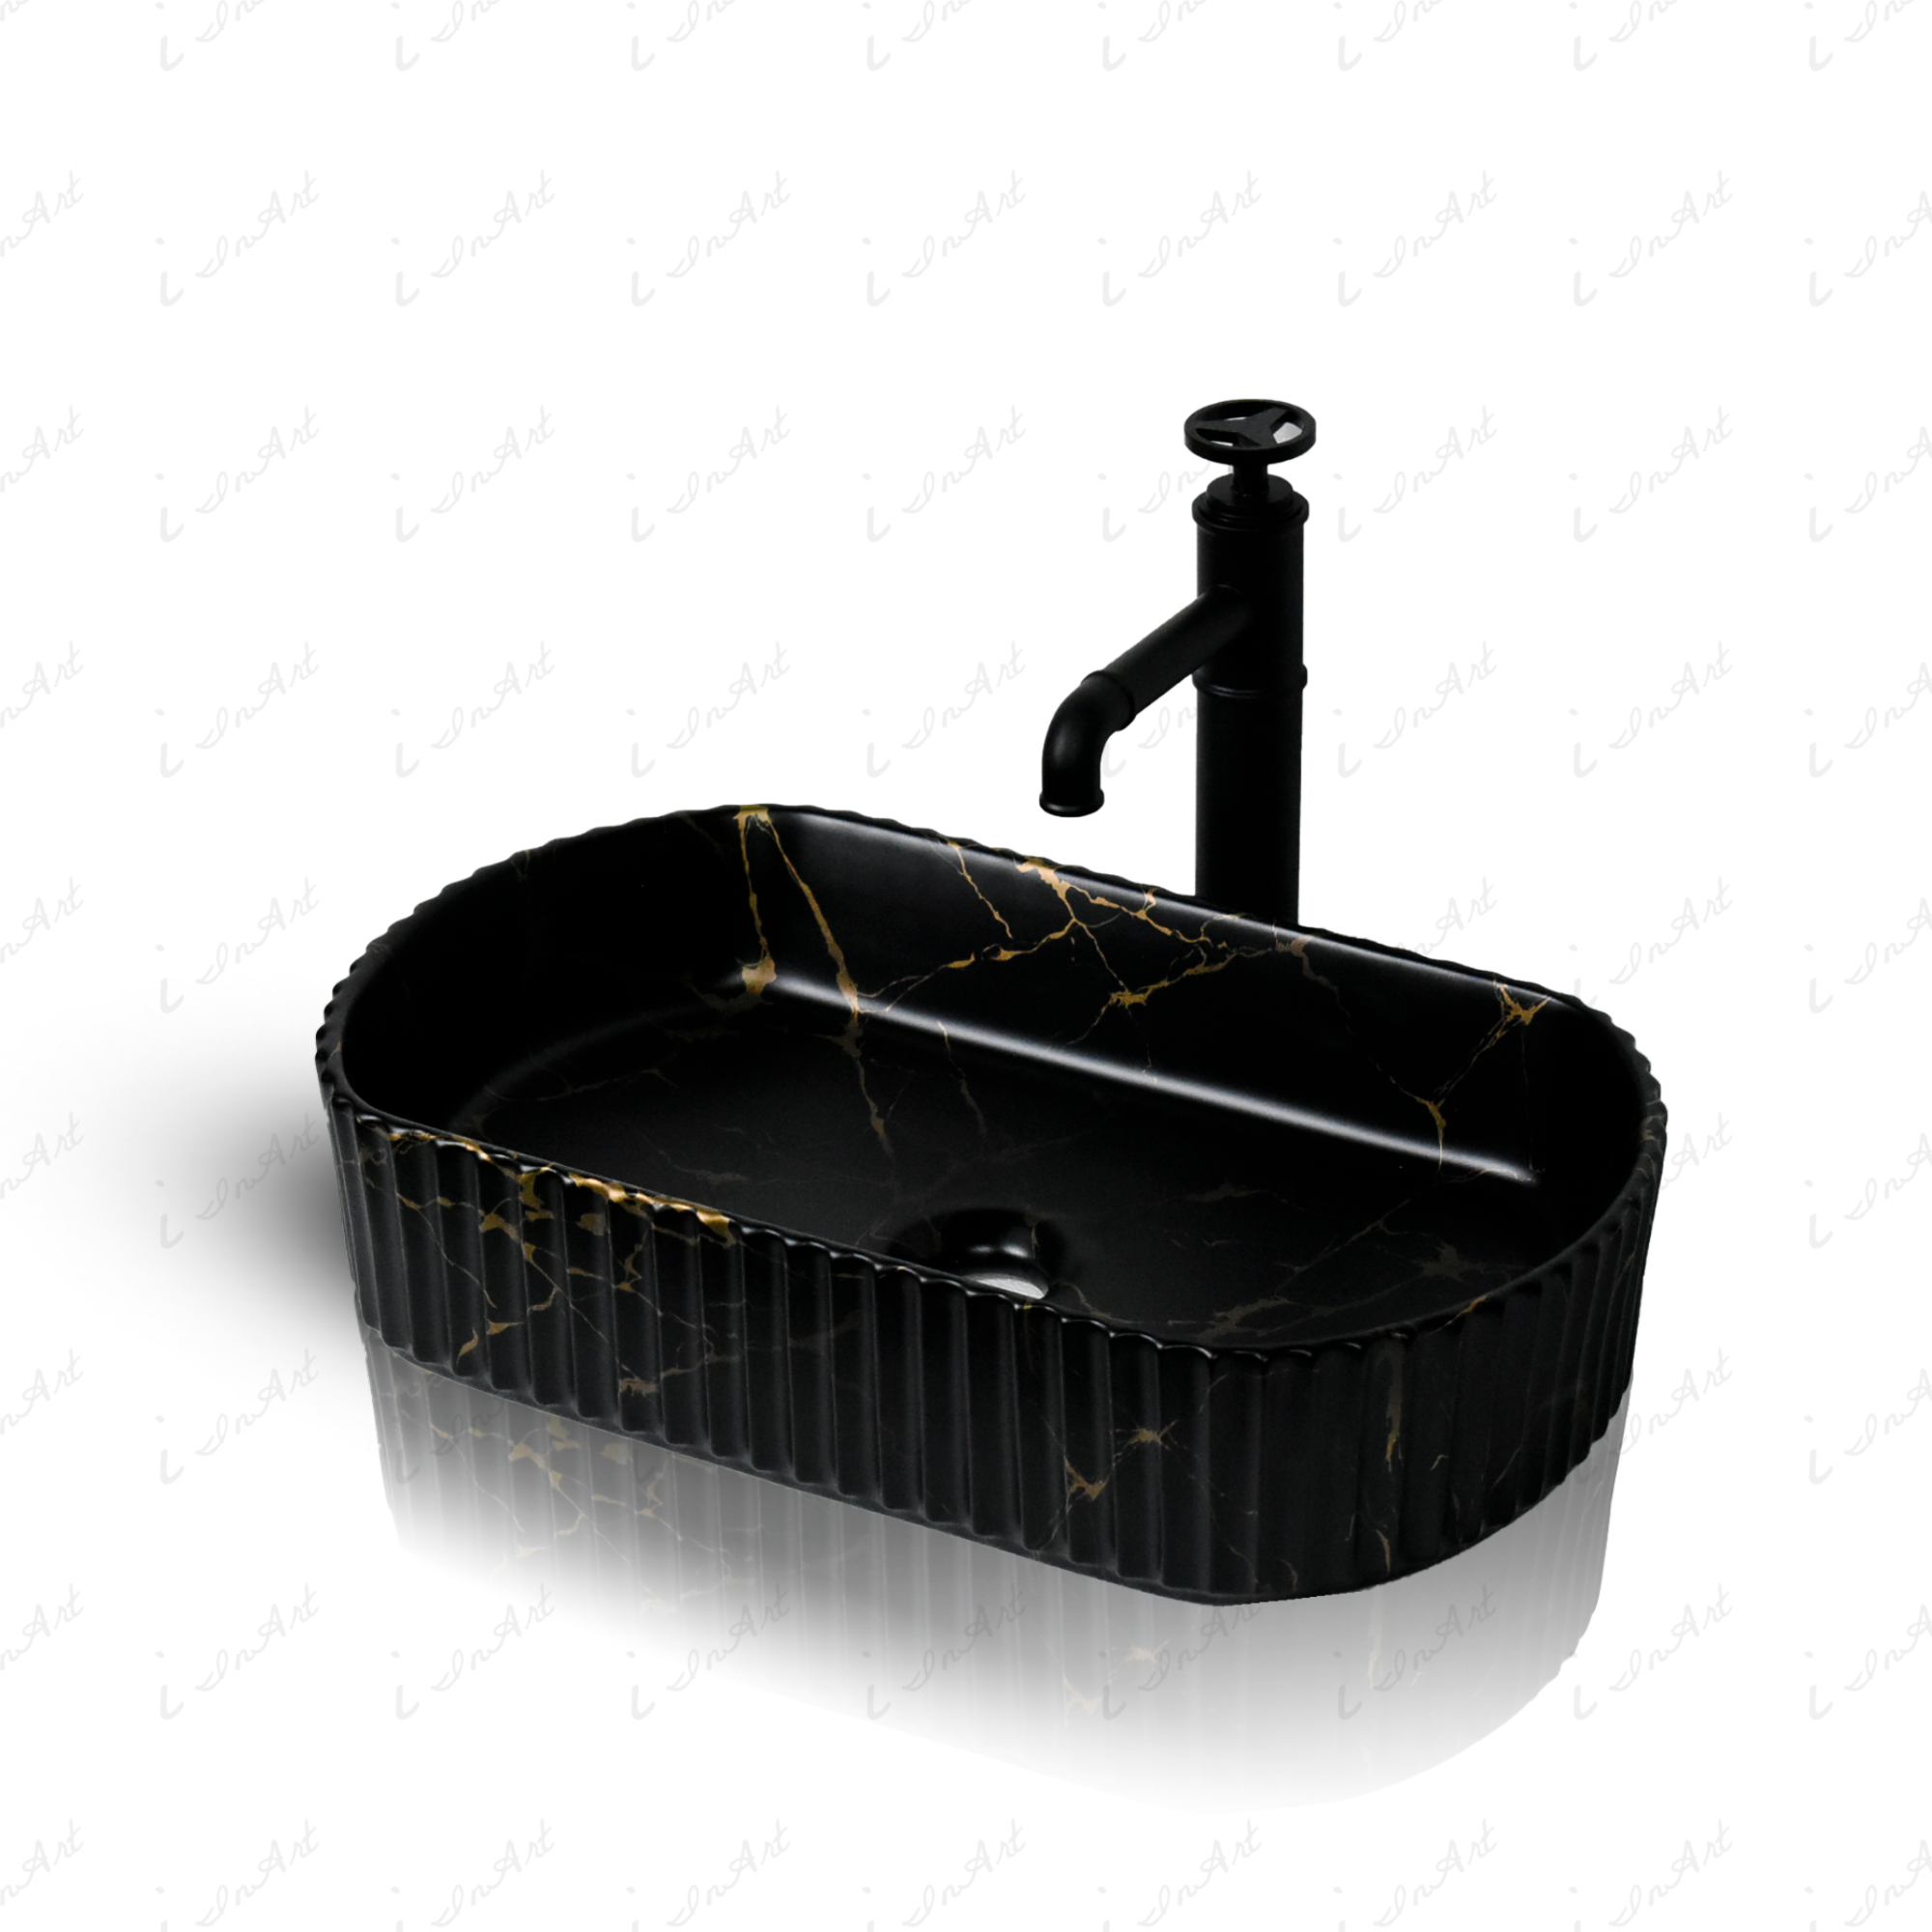 inart matt black wash basin